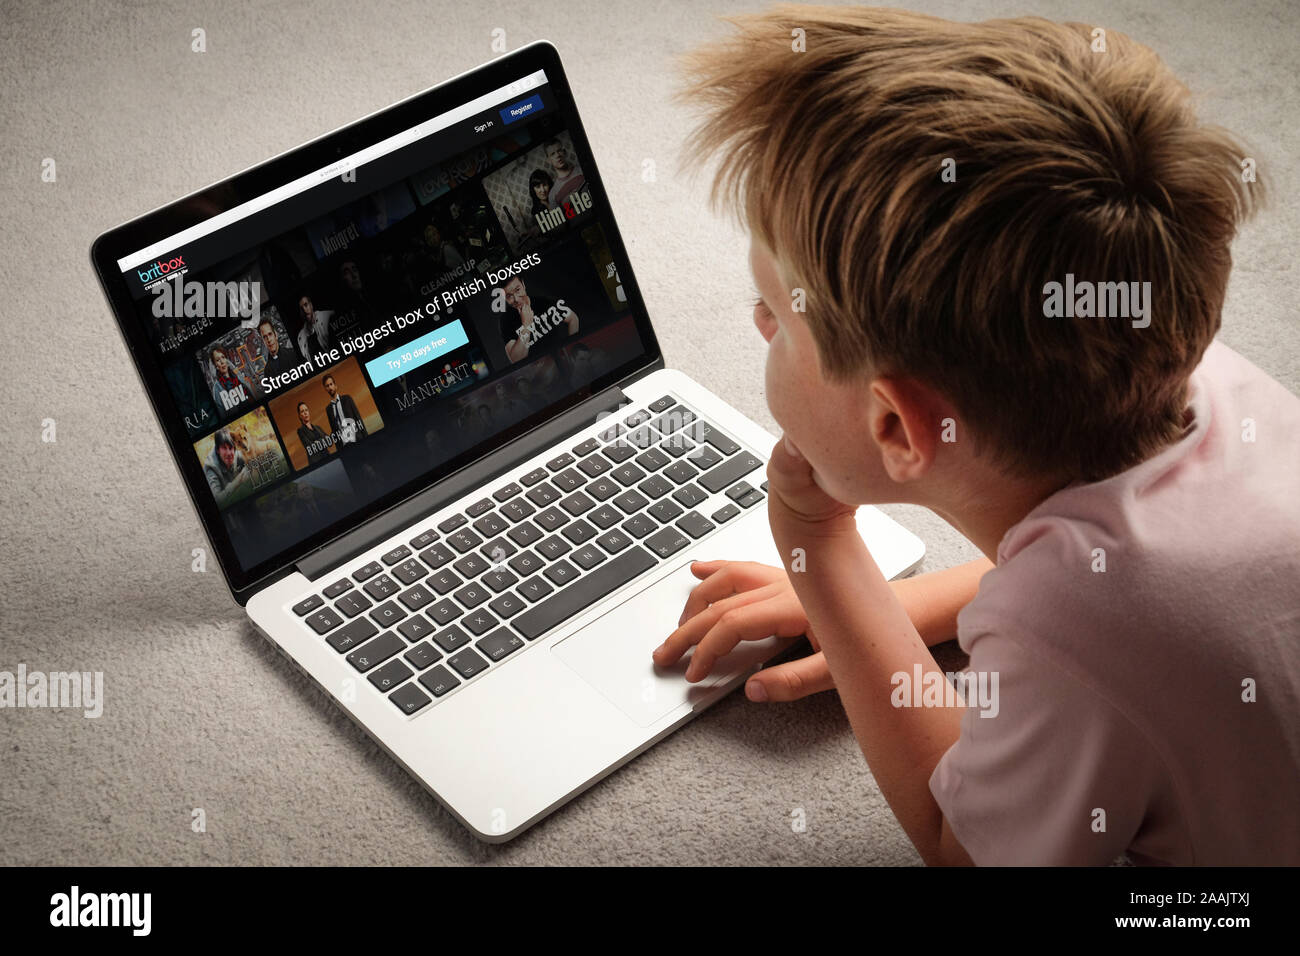 Ein Teenager beobachten britbox auf einem Laptop. Stockfoto